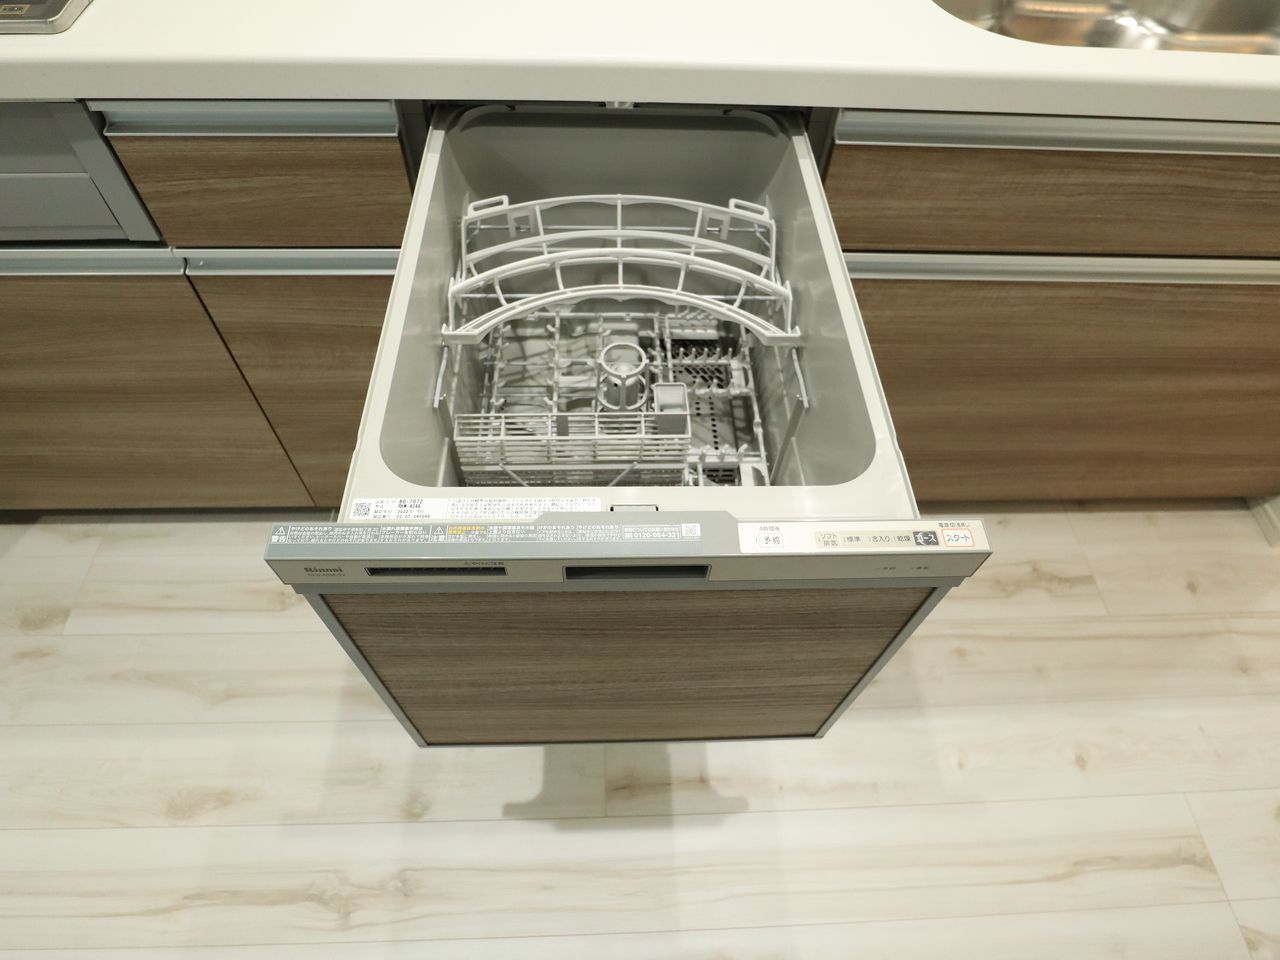 フルオープン食器洗い乾燥機は 腰をかがめることなく、ラクにが出し入れできる引き出し型。すべての操作ボタンを使いやすい上面にレイアウト。